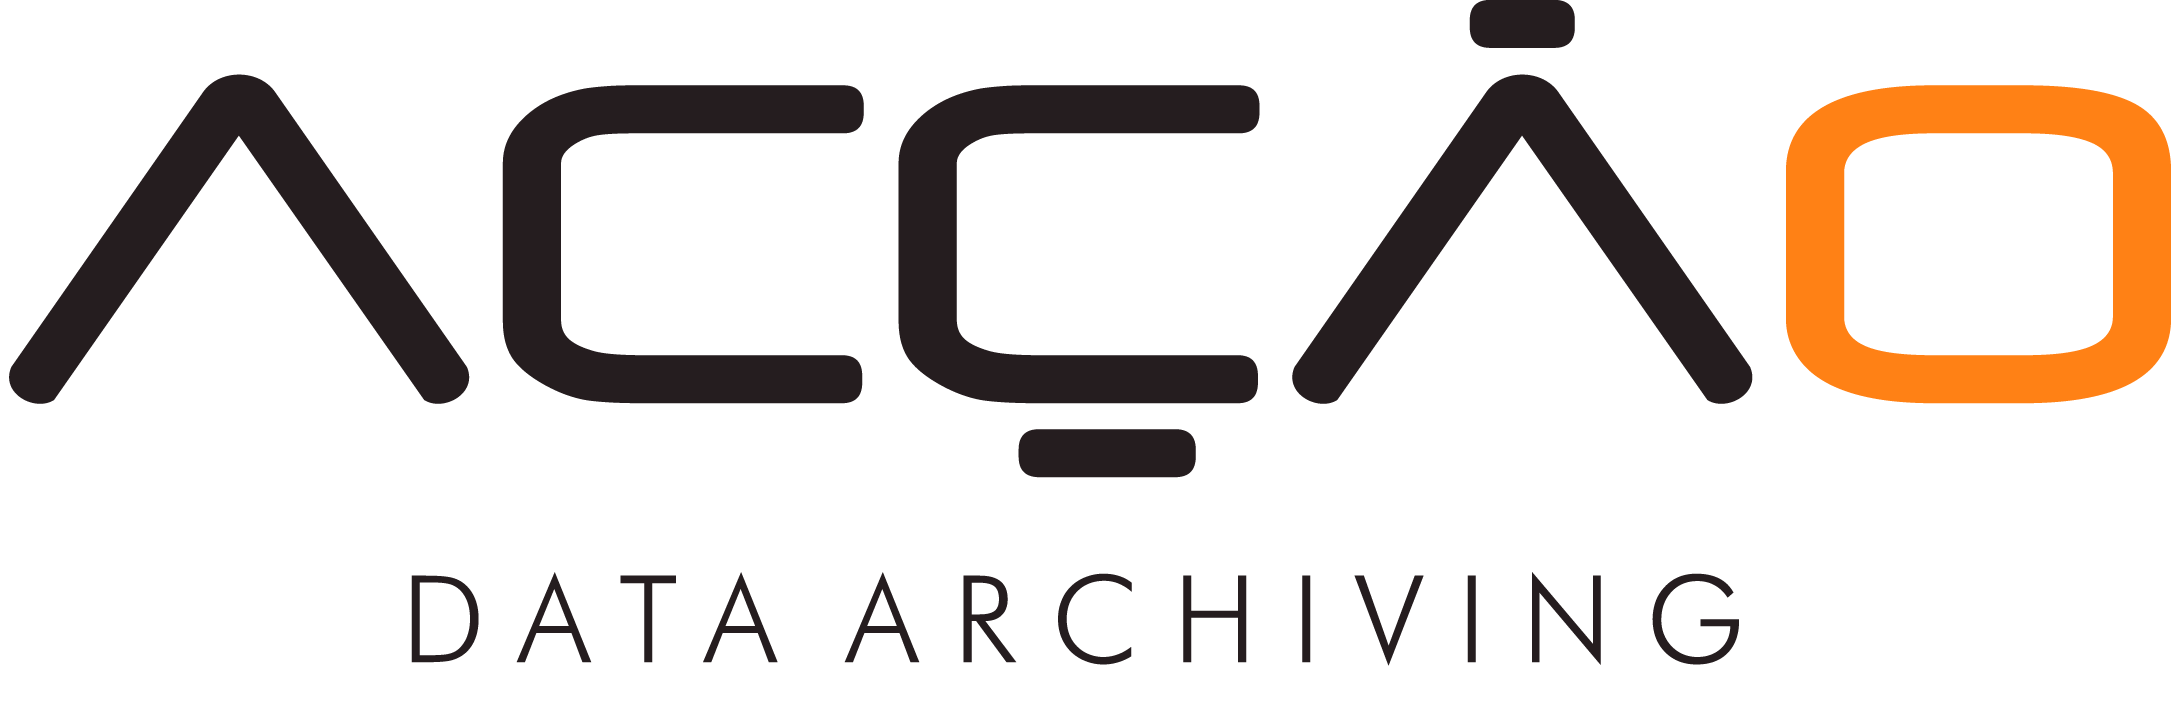 Acção Data Archiving